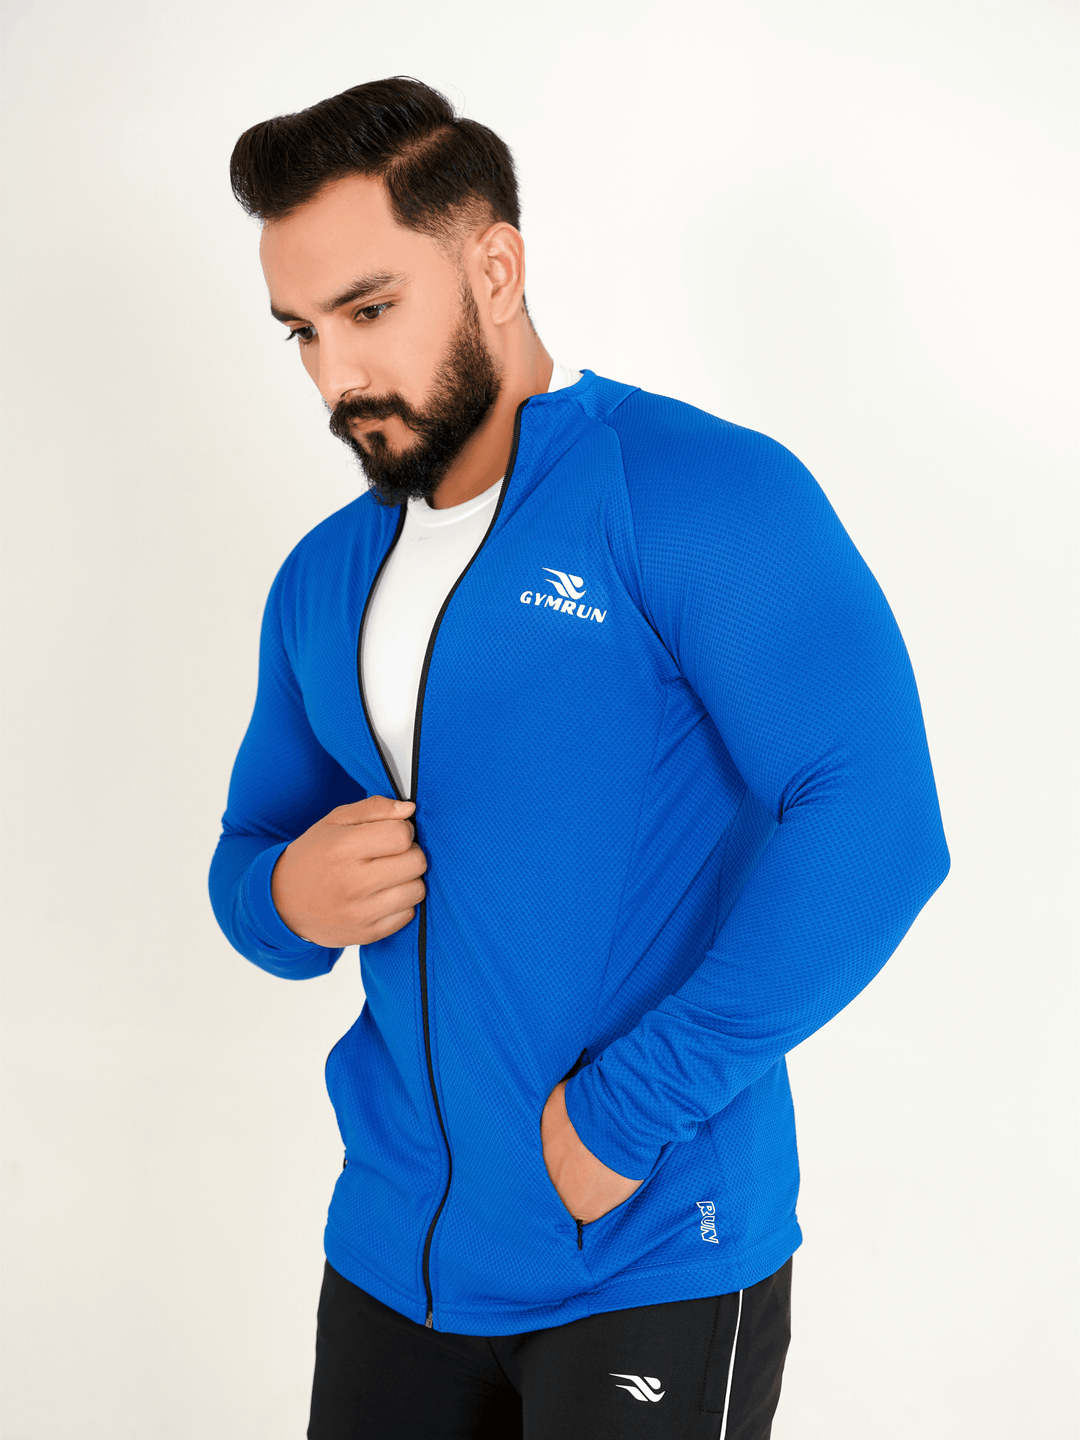 FlexFit Urban Jacket - Royal Blue - GYMRUN Activewear